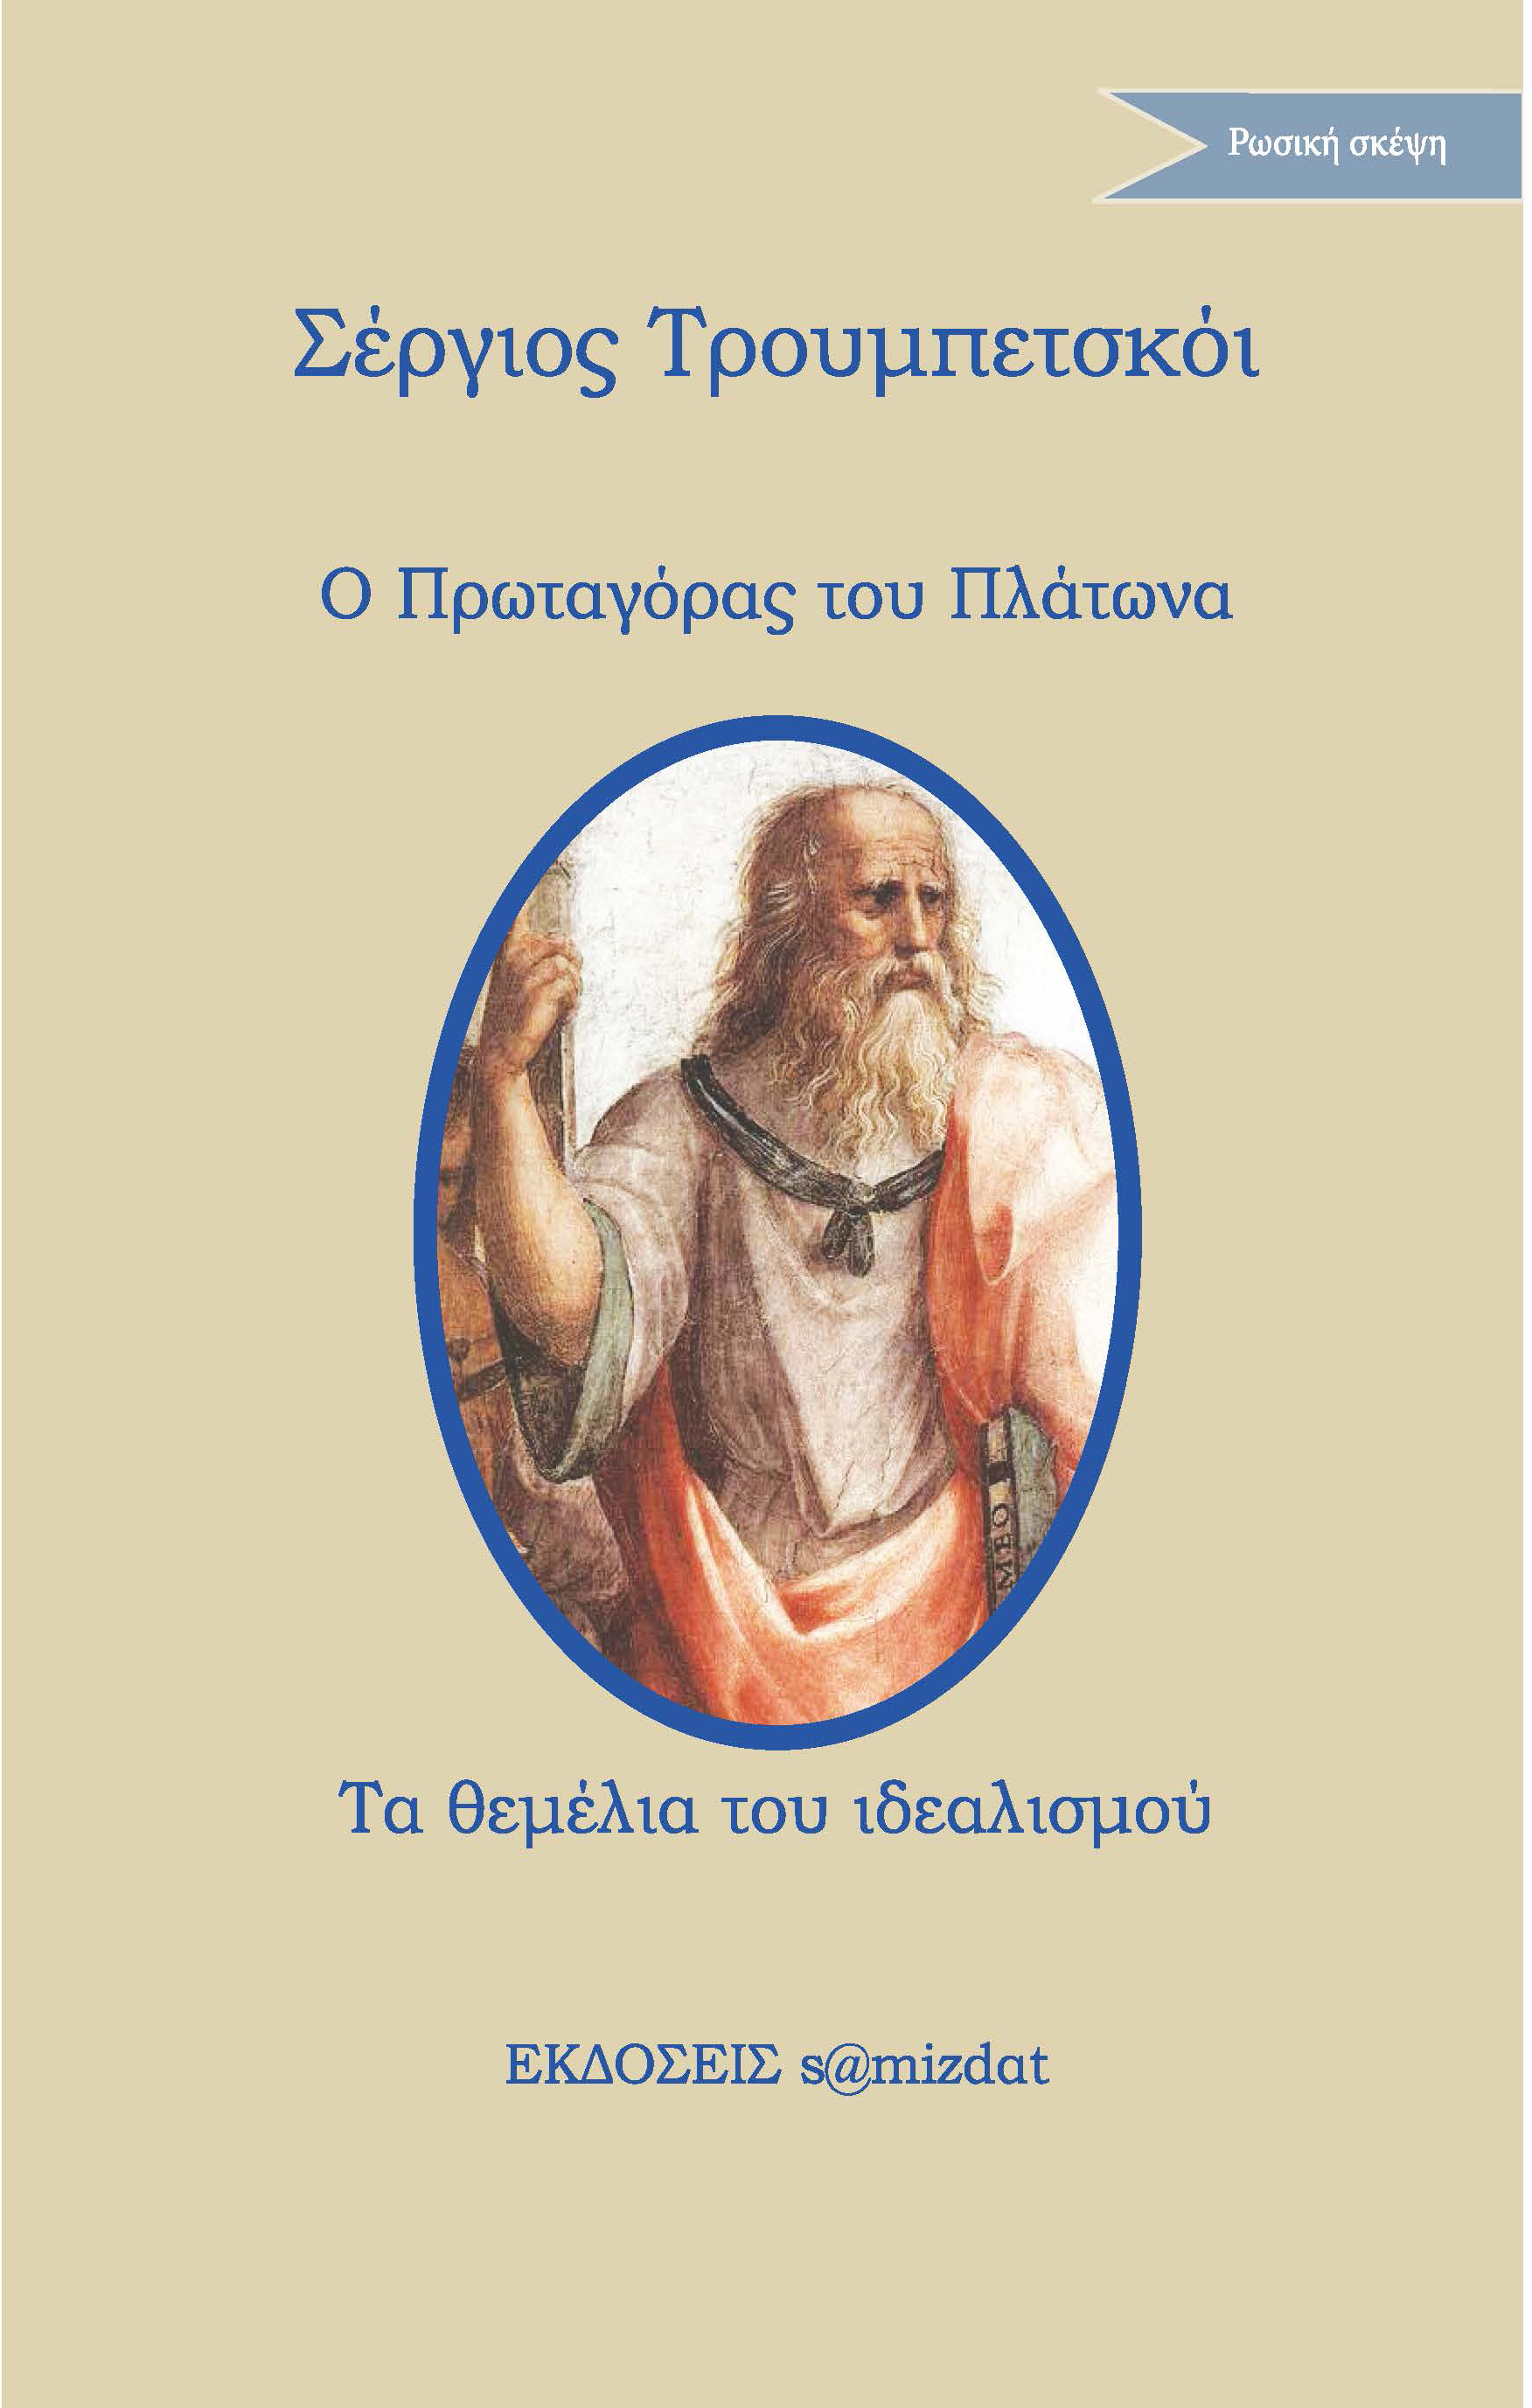 Σέργιος Τρουμπετσκόι Ο Πρωταγόρας του Πλάτωνα Τα θεμέλια του ιδεαλισμού